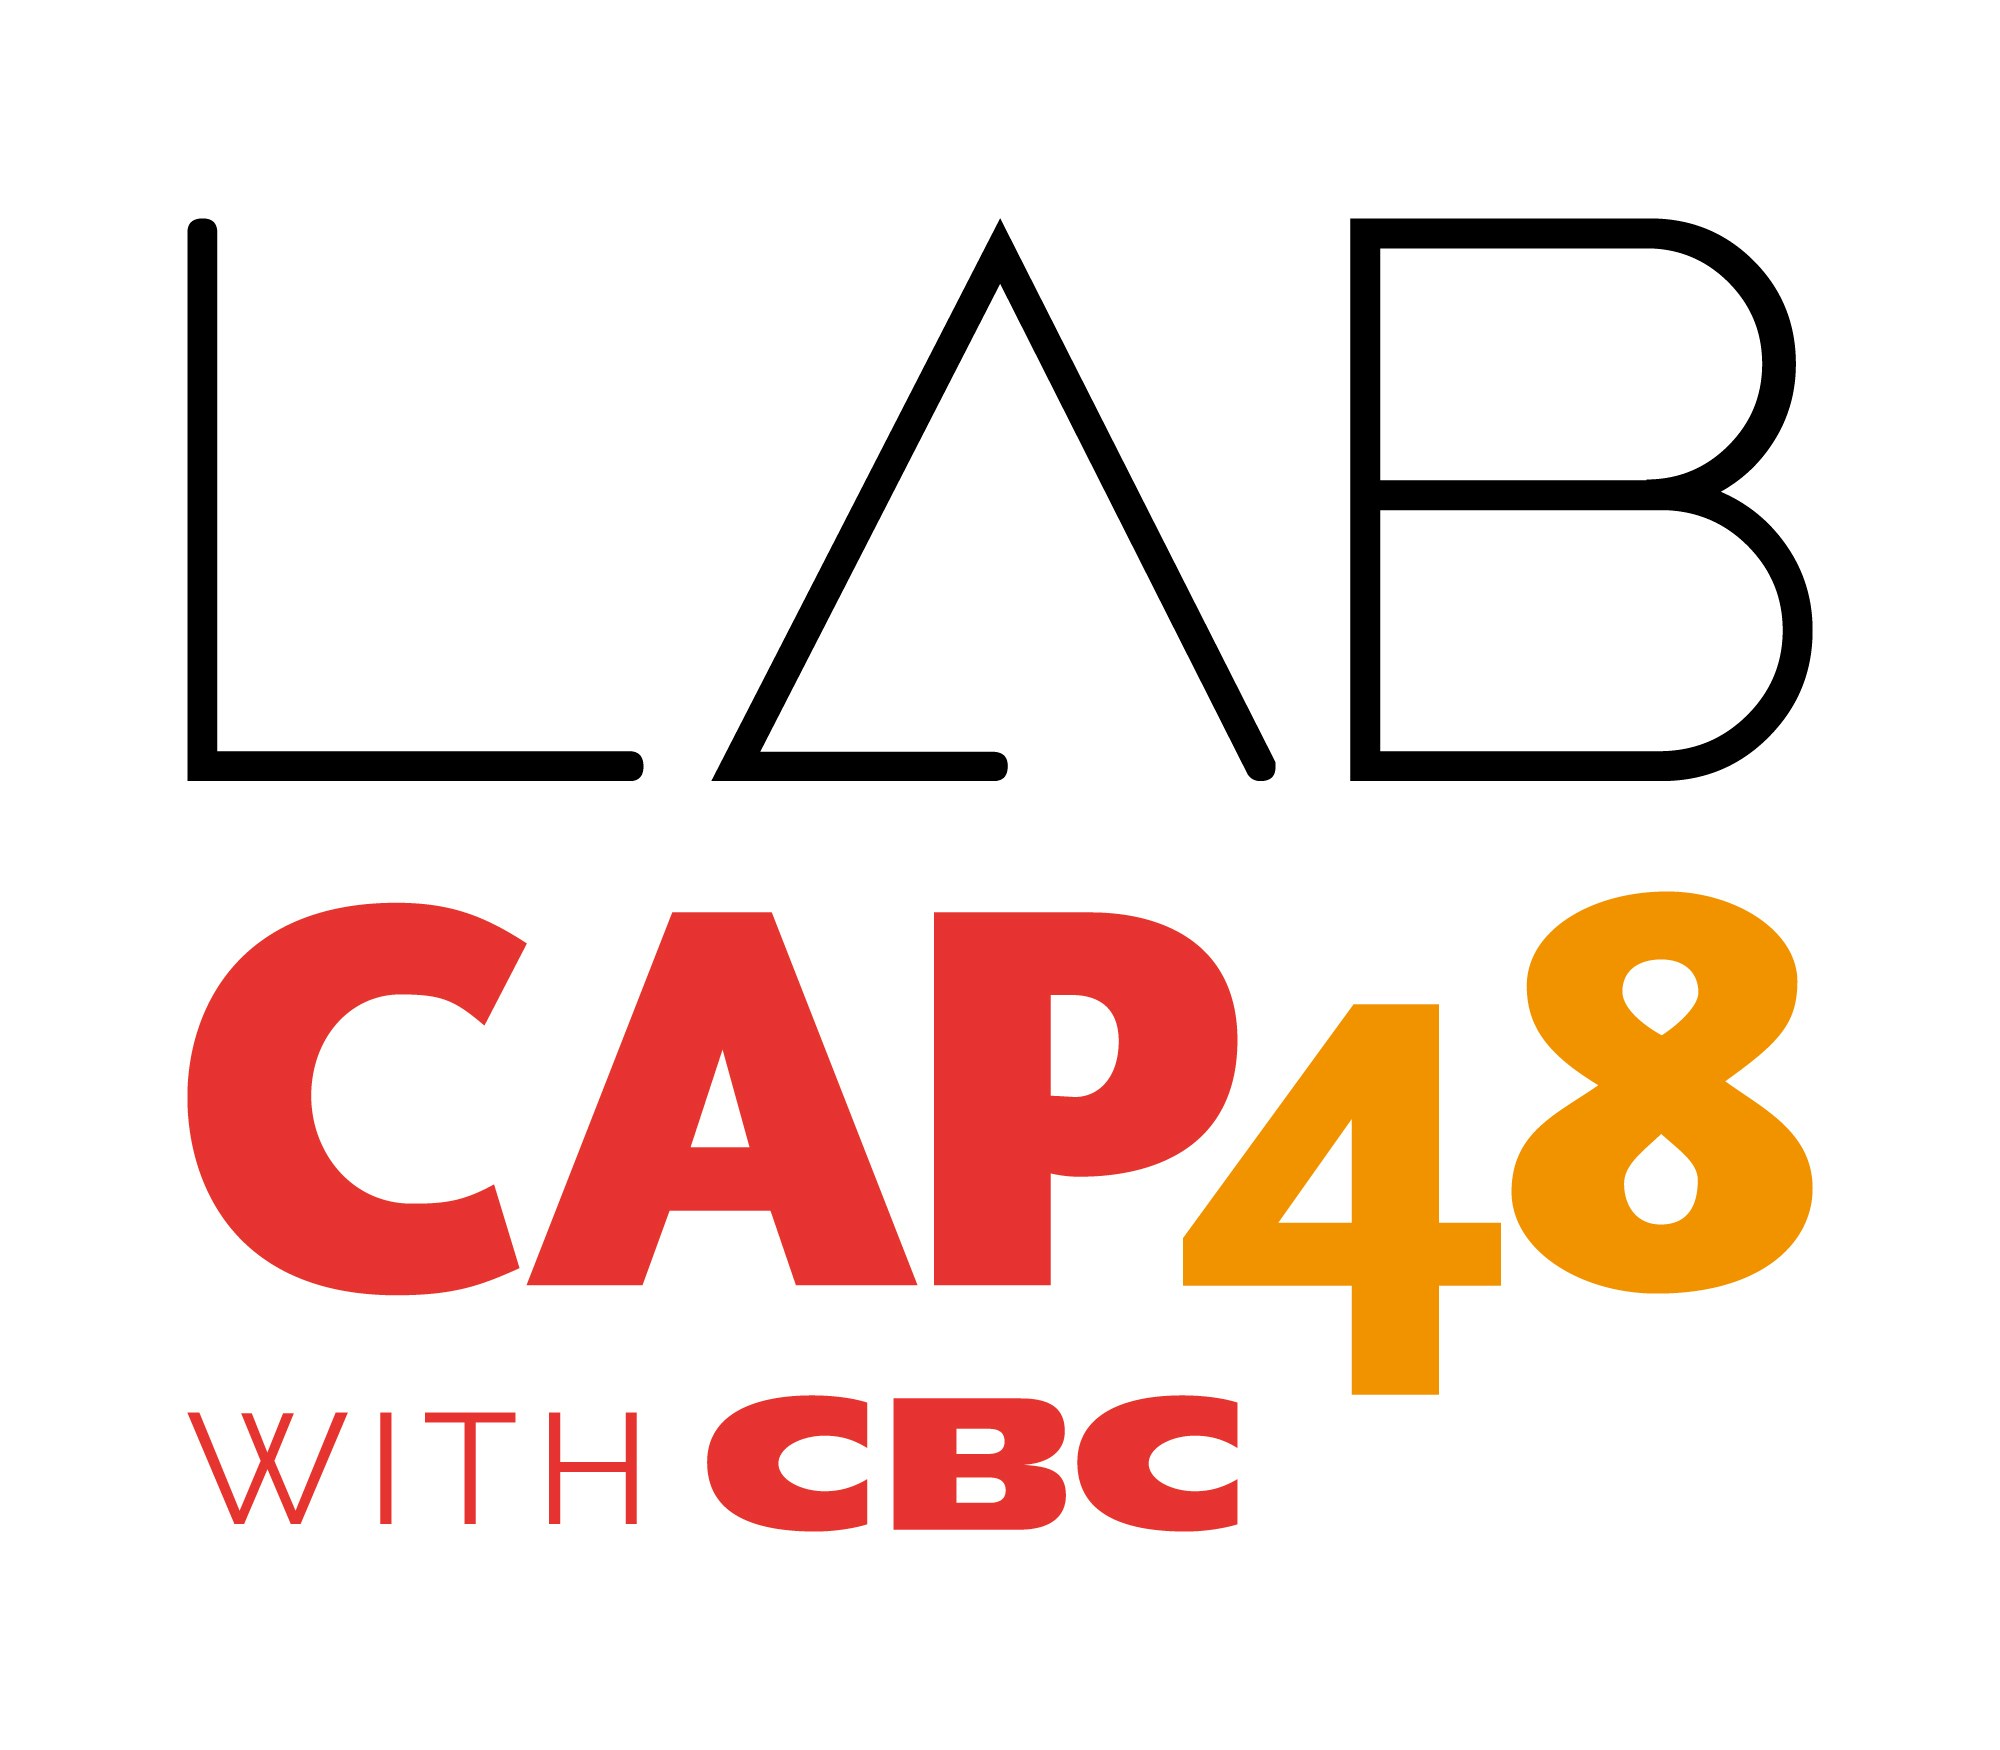 Clairs Vallons et "LabCAP48 with CBC", c'est reparti ! 